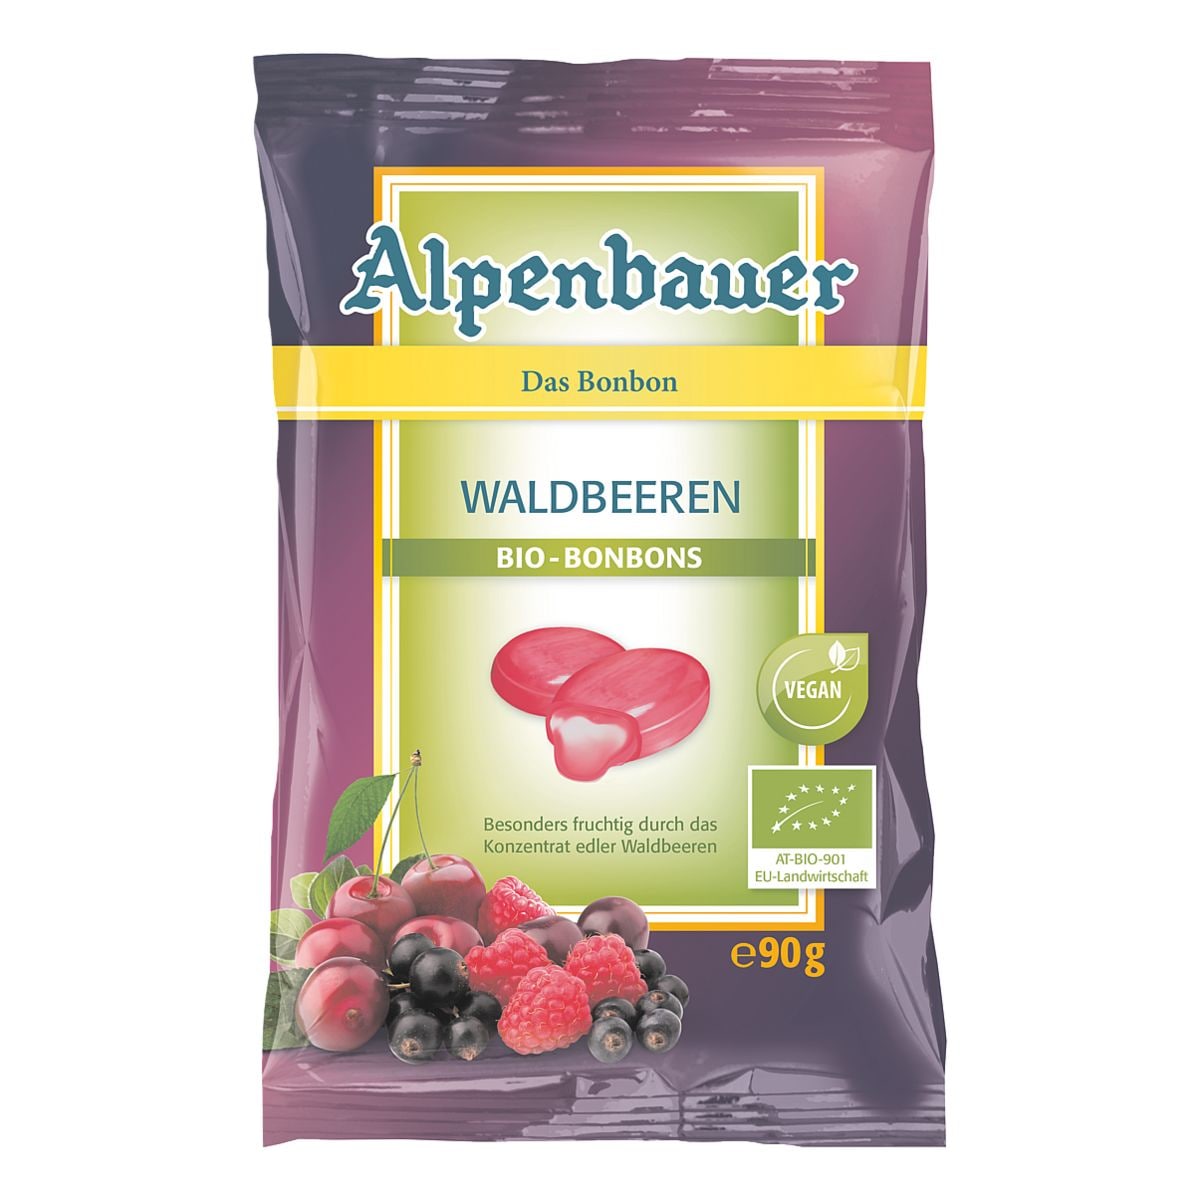 Alpenbauer BIO-Bonbons Waldbeeren